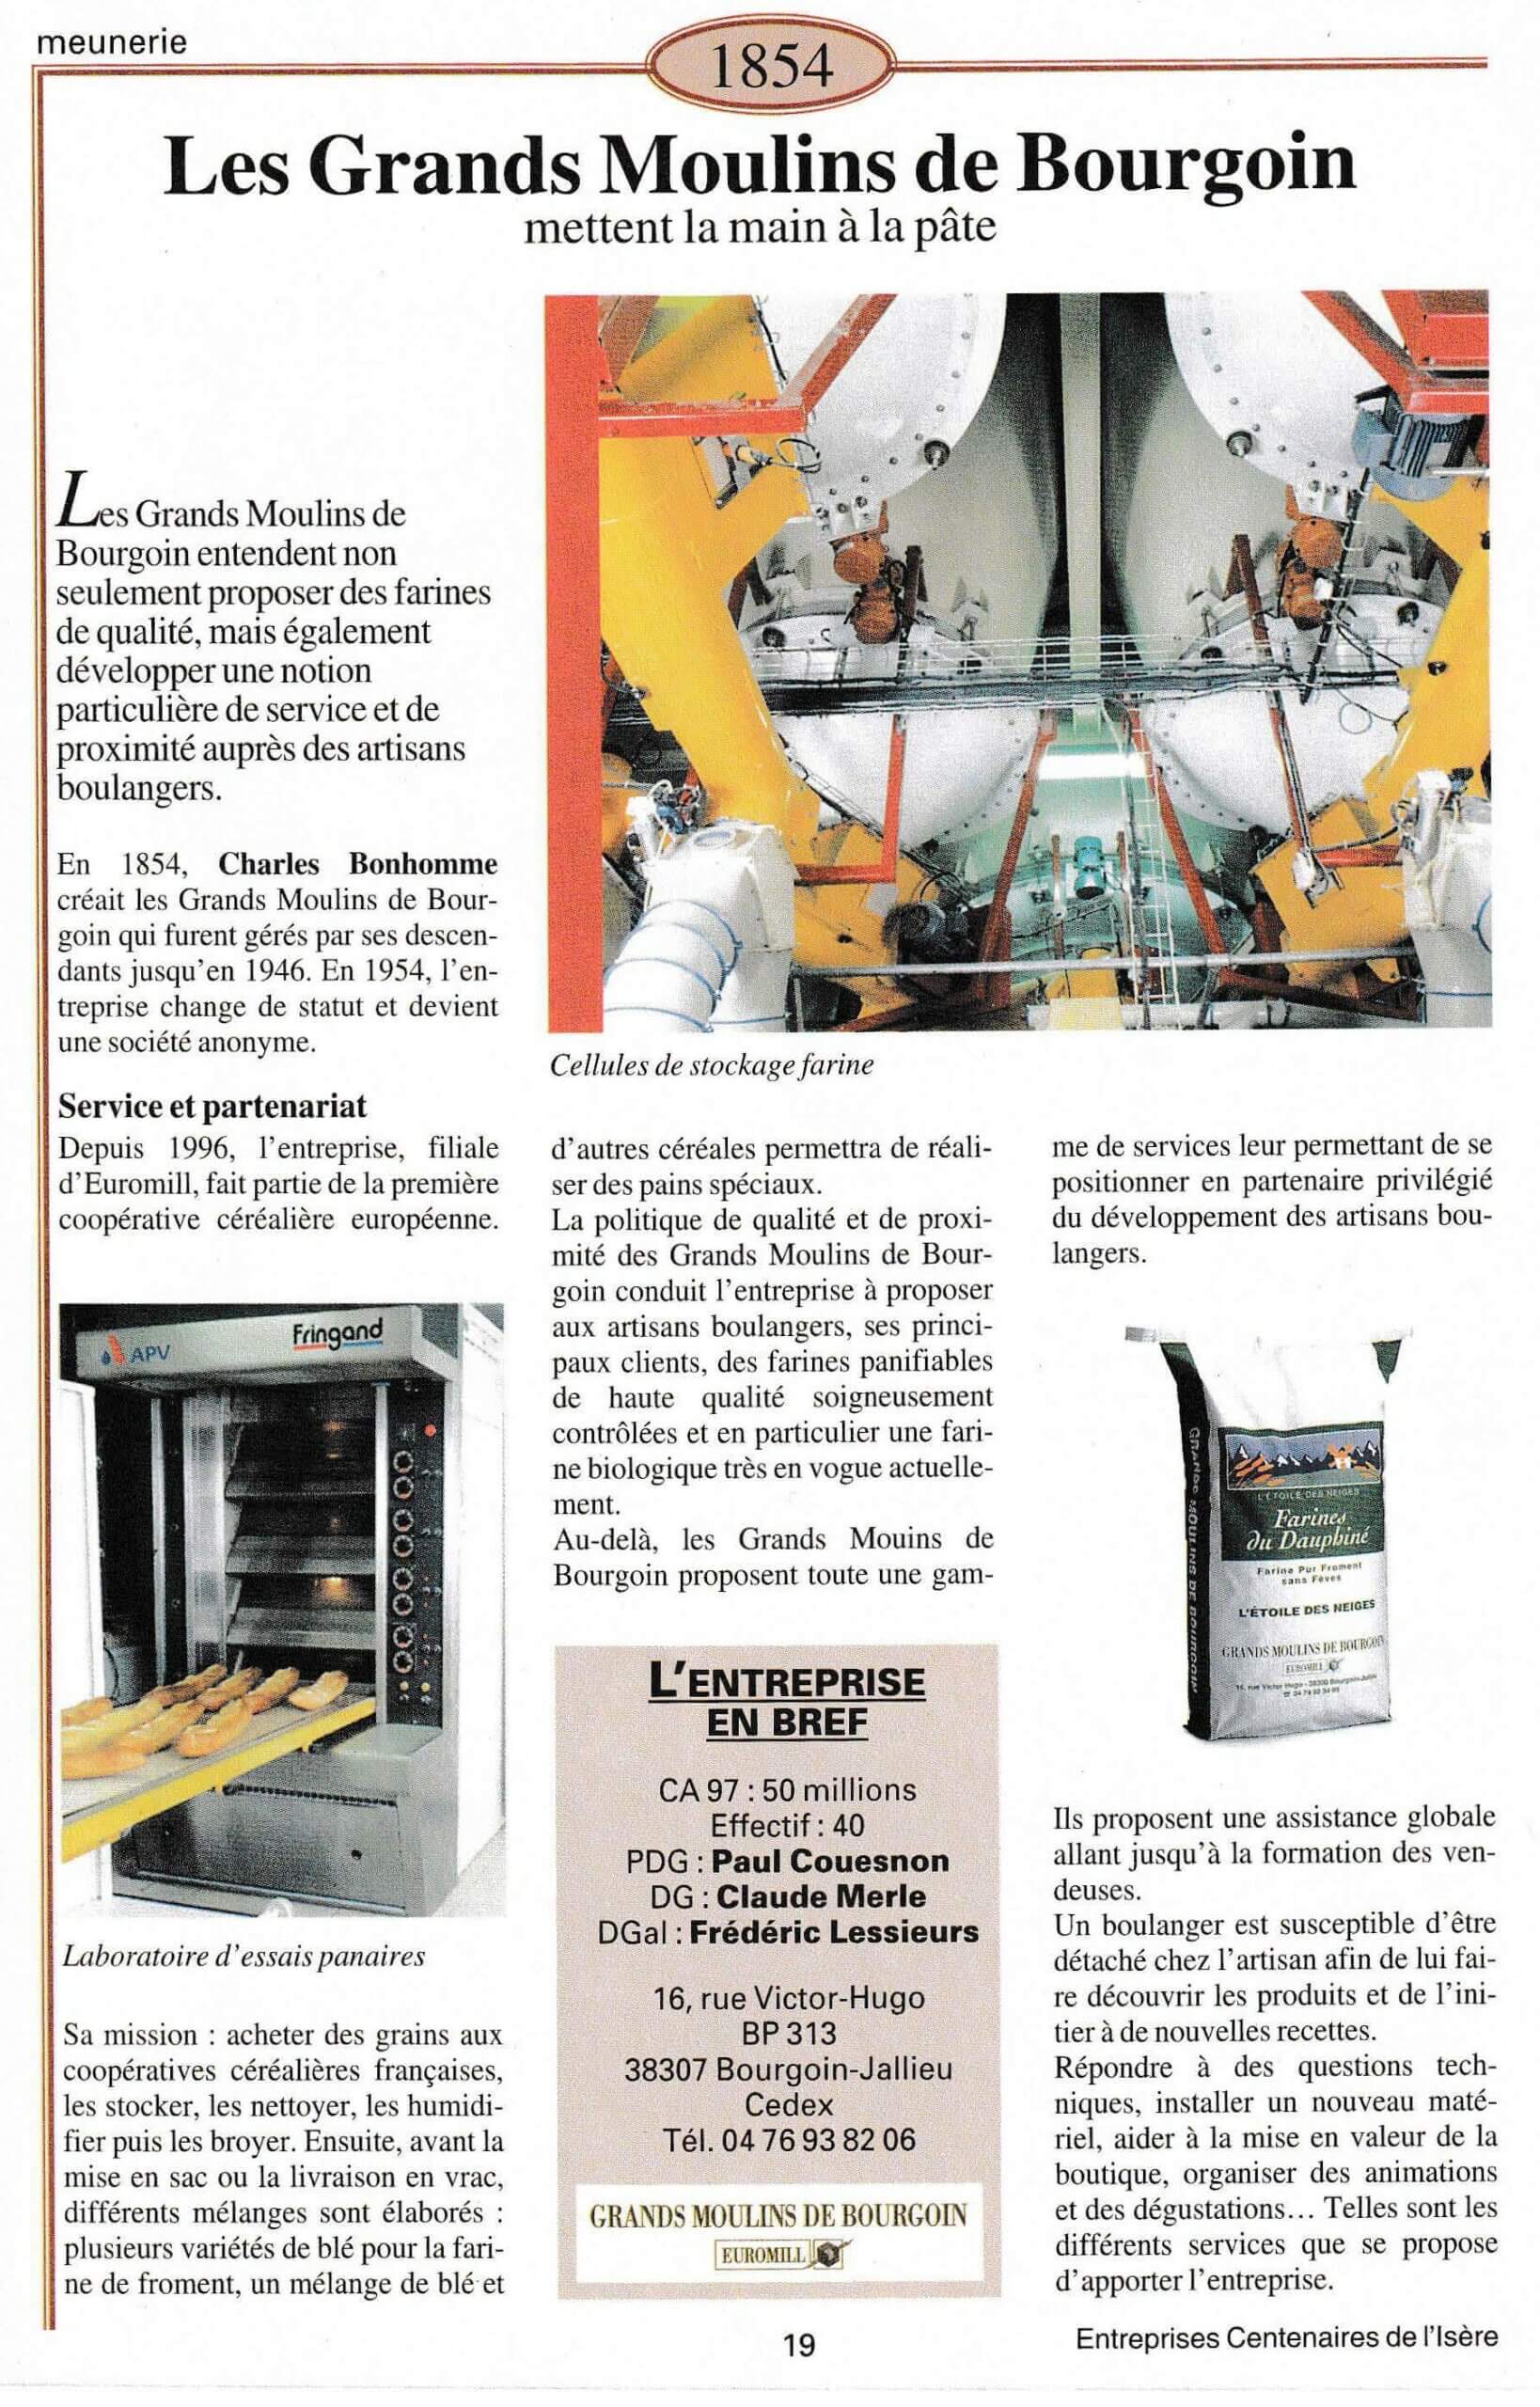 Les Grands Moulins de Bourgoin - fiche du supplément "Entreprises centenaires en Isère", publié par Les affiches de Grenoble et du Dauphiné, juin 1998.